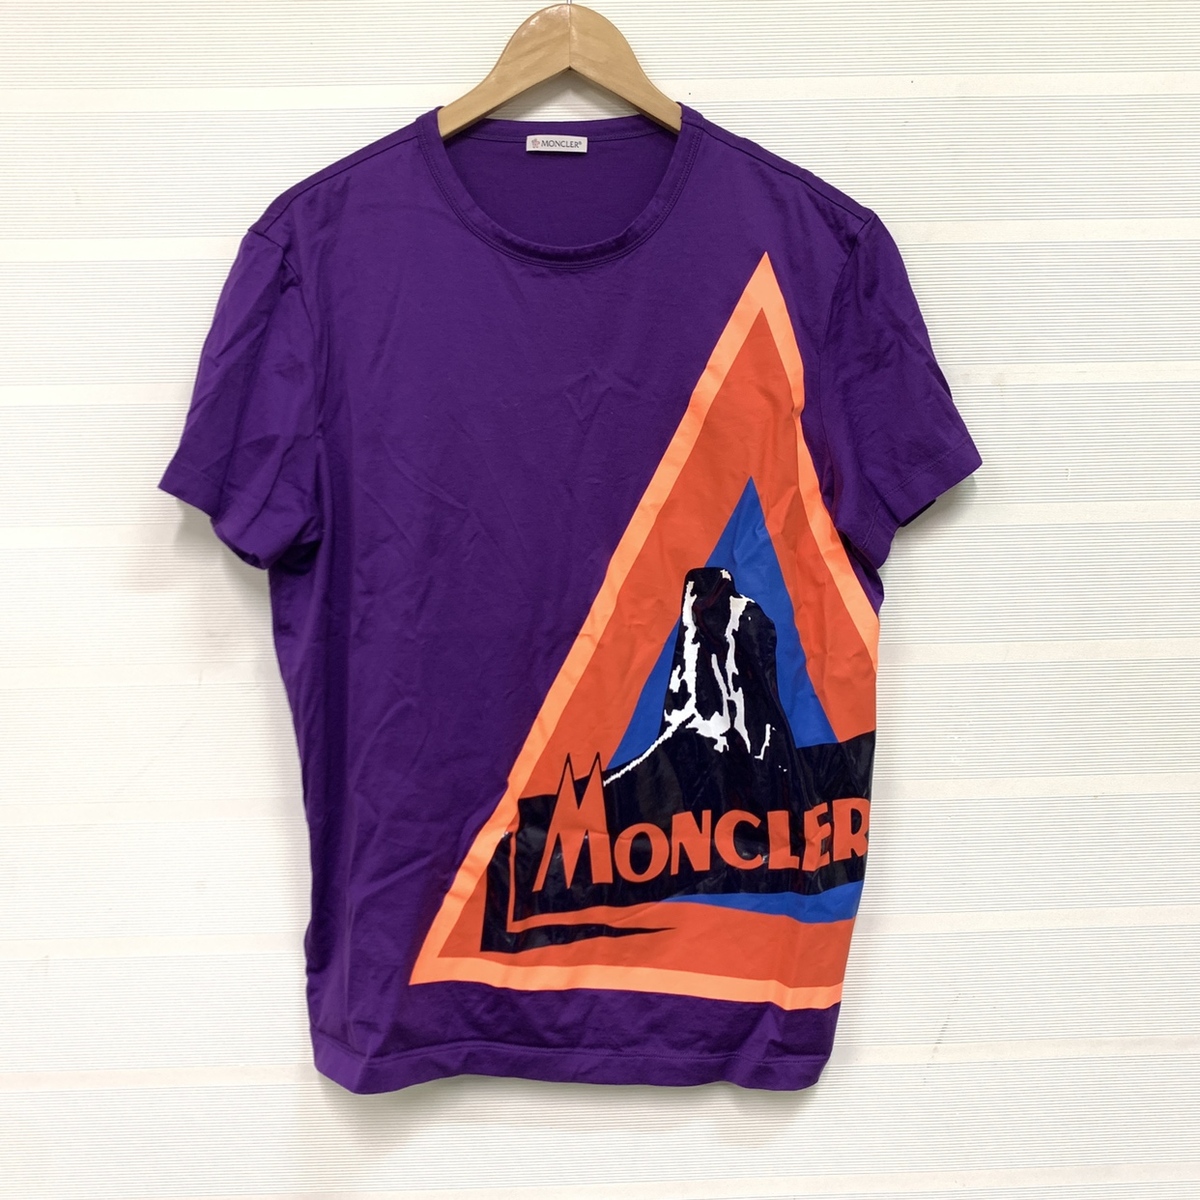 モンクレールの19年製 パープルカラー ロゴデザイン 半袖Tシャツの買取実績です。